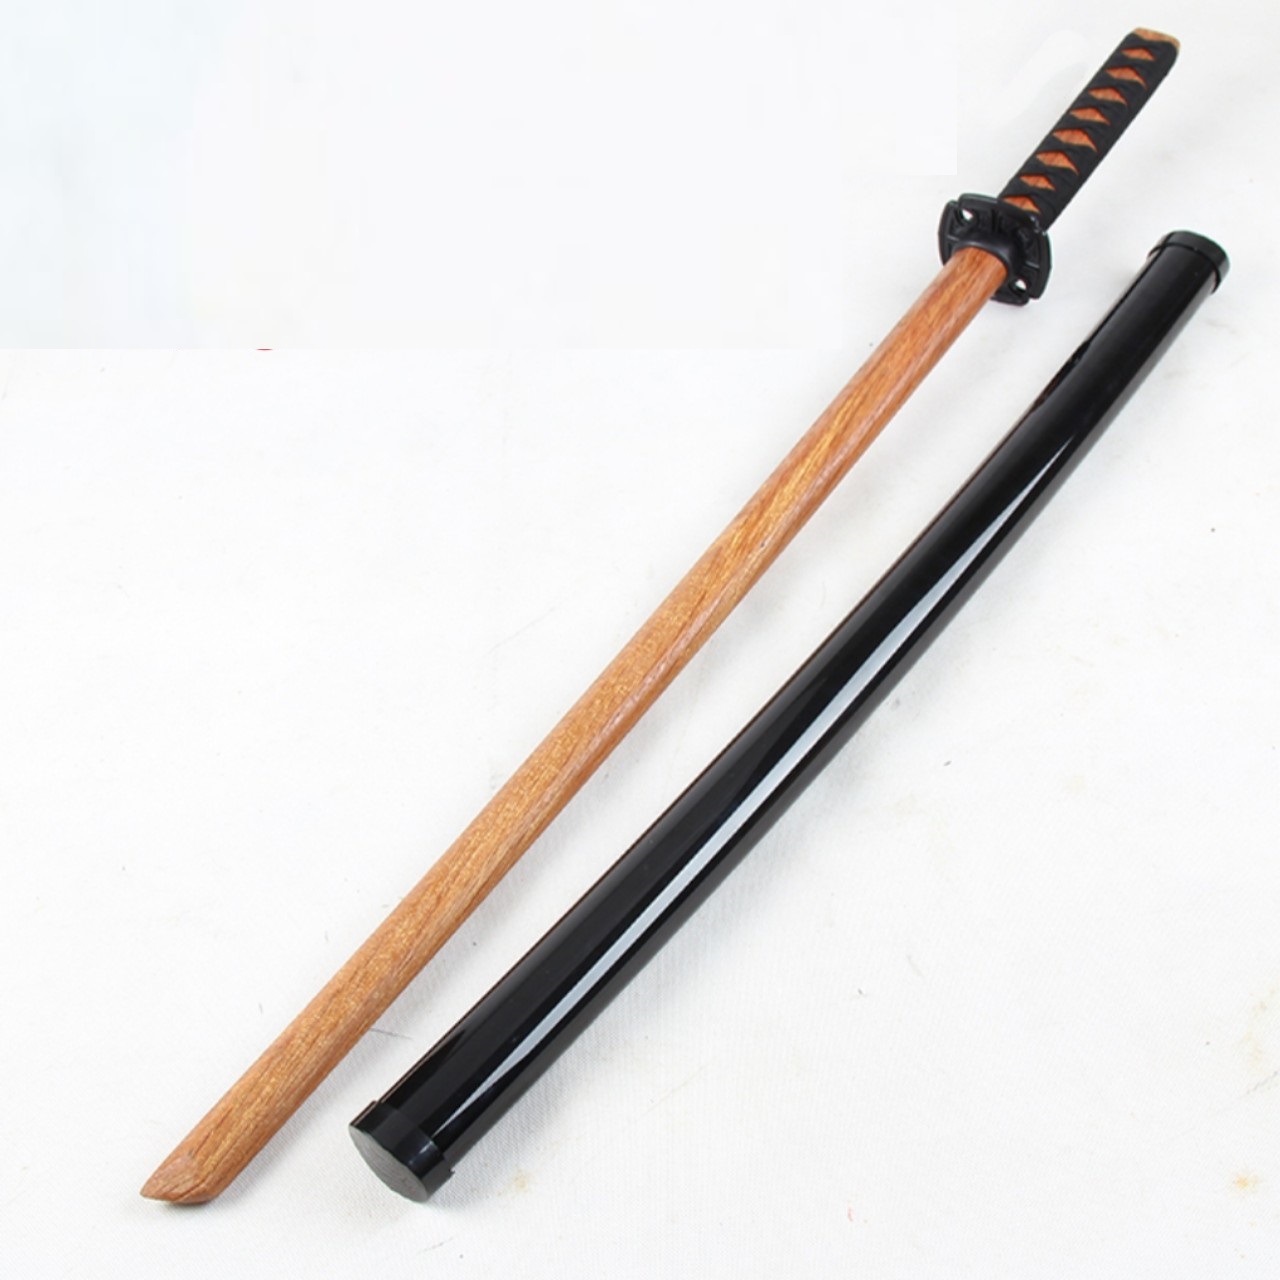 Kiếm nhật katana làm bằng gỗ cứng dài 1m dùng để tập võ, tập thể lực